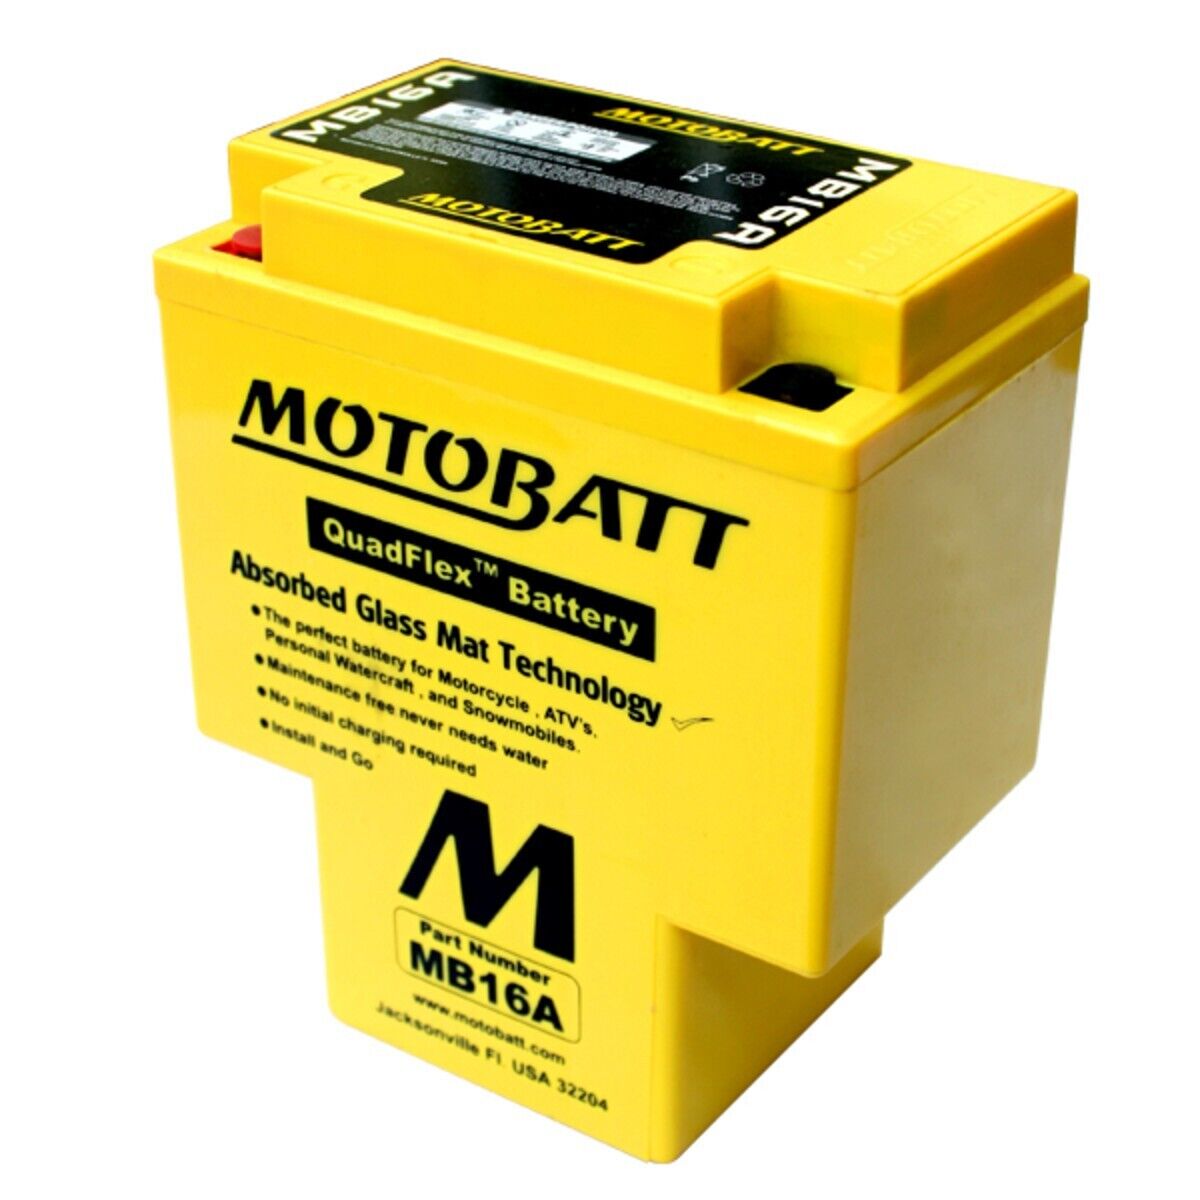 ✅✅ Motobatt MB16A QUADFLEX 12V AGM Battery  Replaces HYB16A-A/HYB16A-AB ✅✅